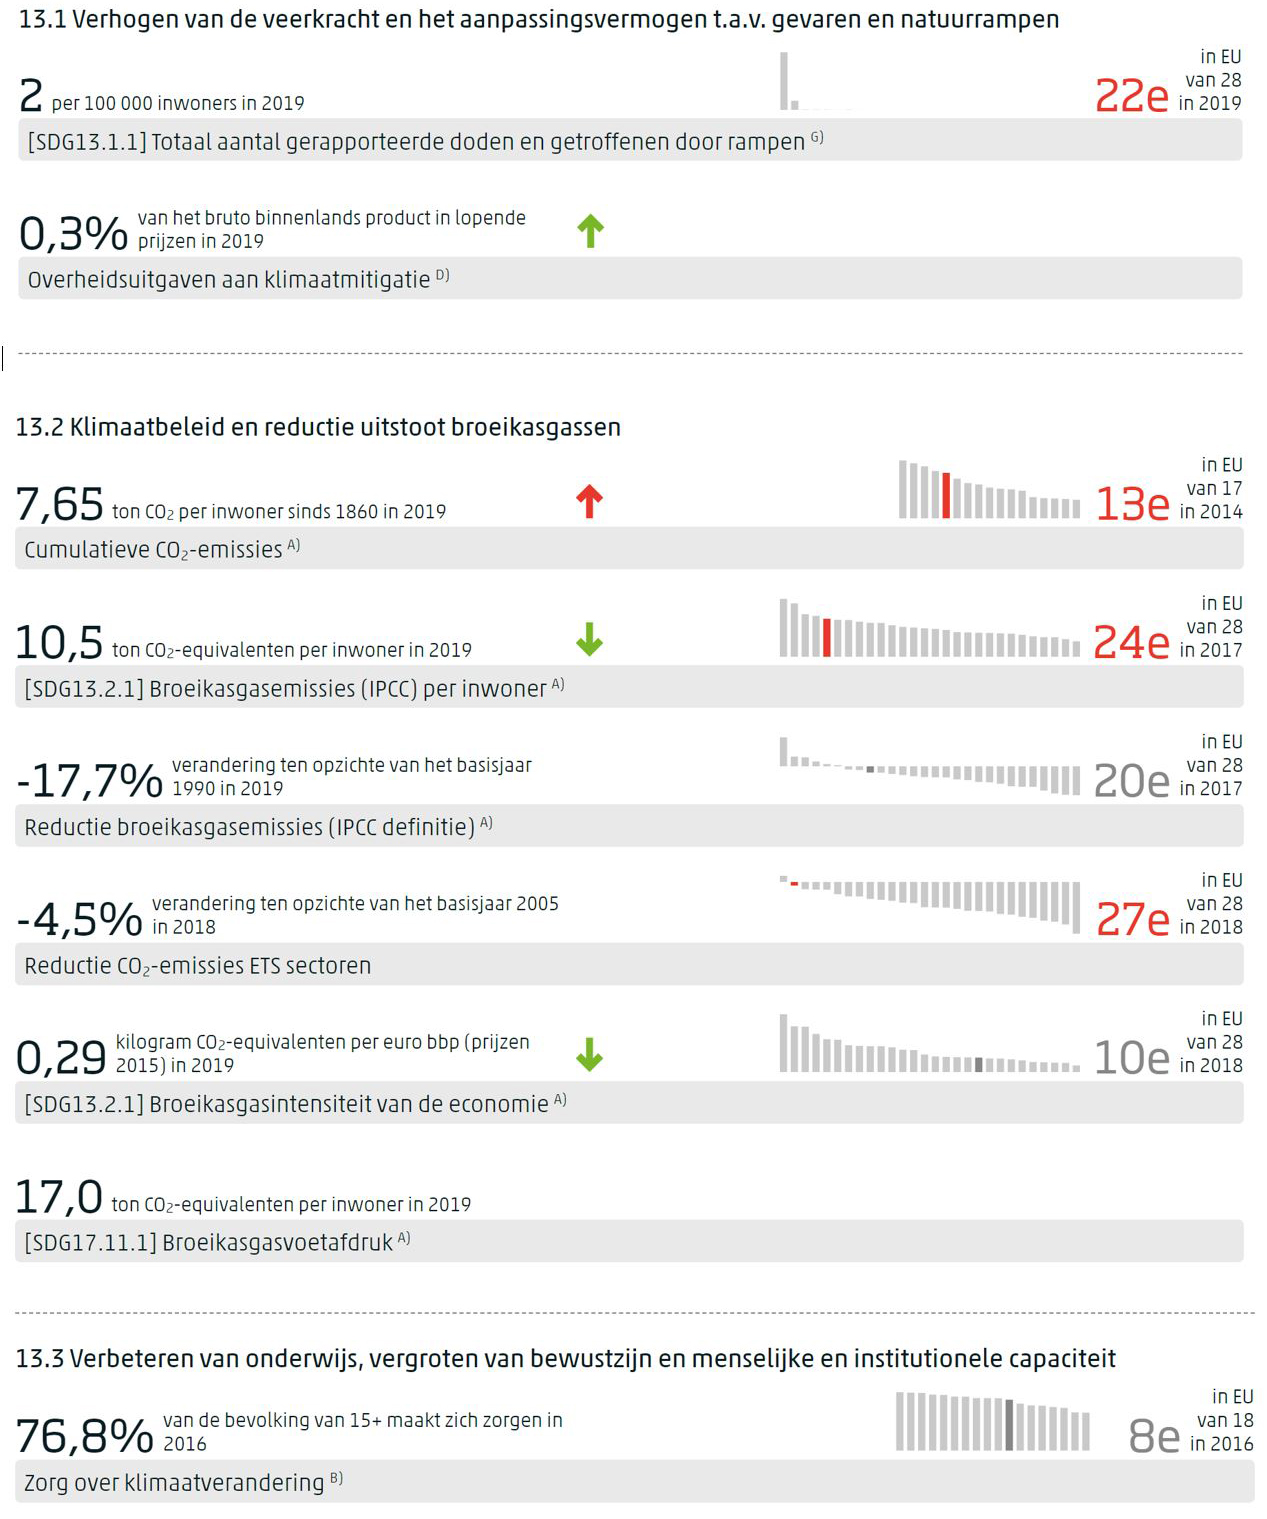 Dashboard voor SDG 13 met per indicator de meest recente waarde, de trend op middellange termijn indien gemeten, en de positie van Nederland in de EU indien waargenomen.